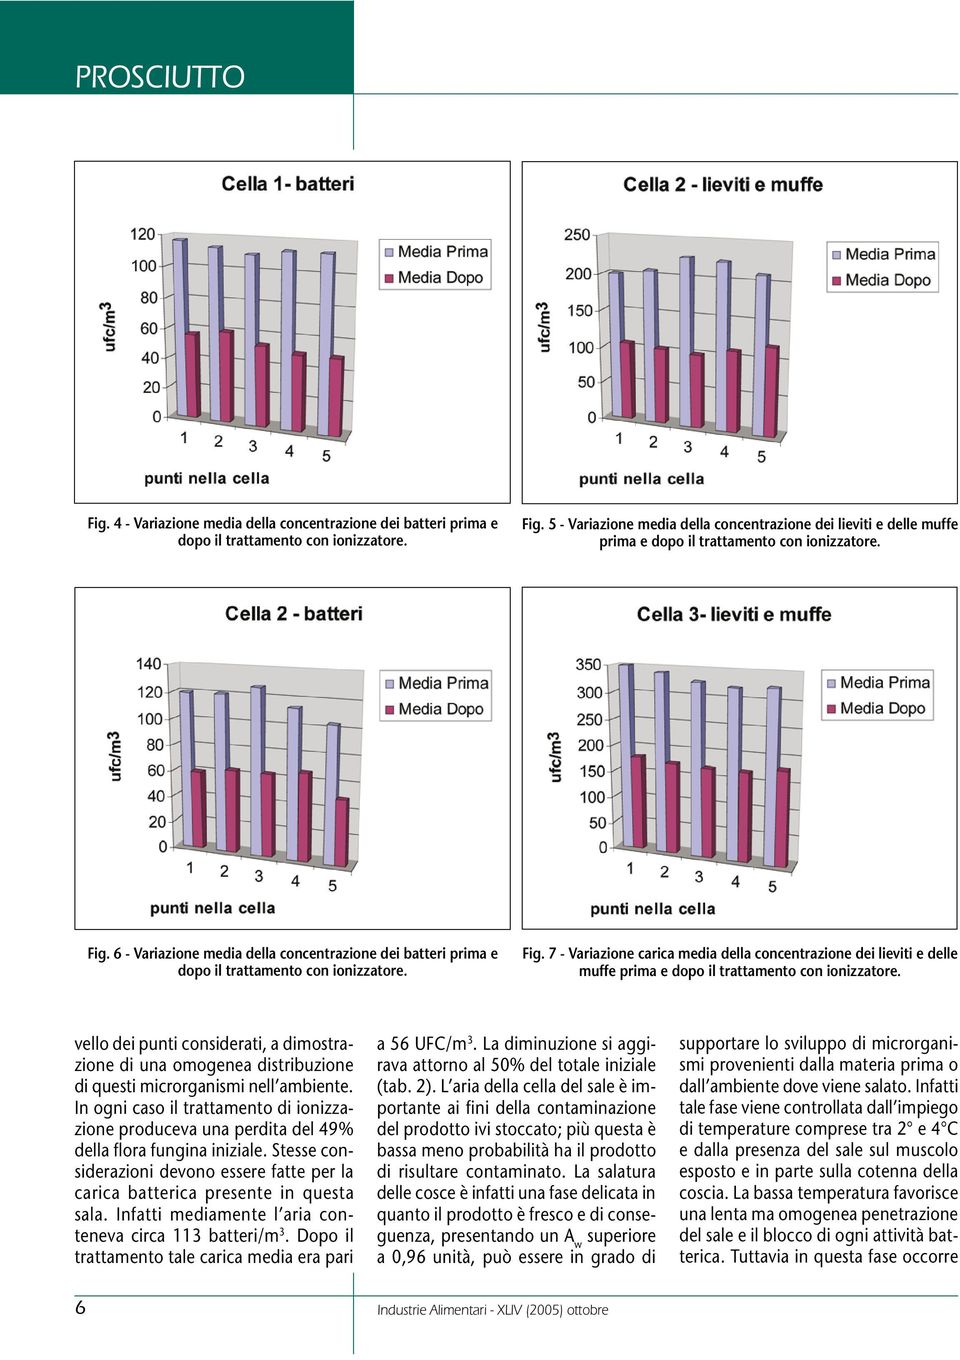 6 - Variazione media della concentrazione dei batteri prima e dopo il trattamento con ionizzatore. Fig.